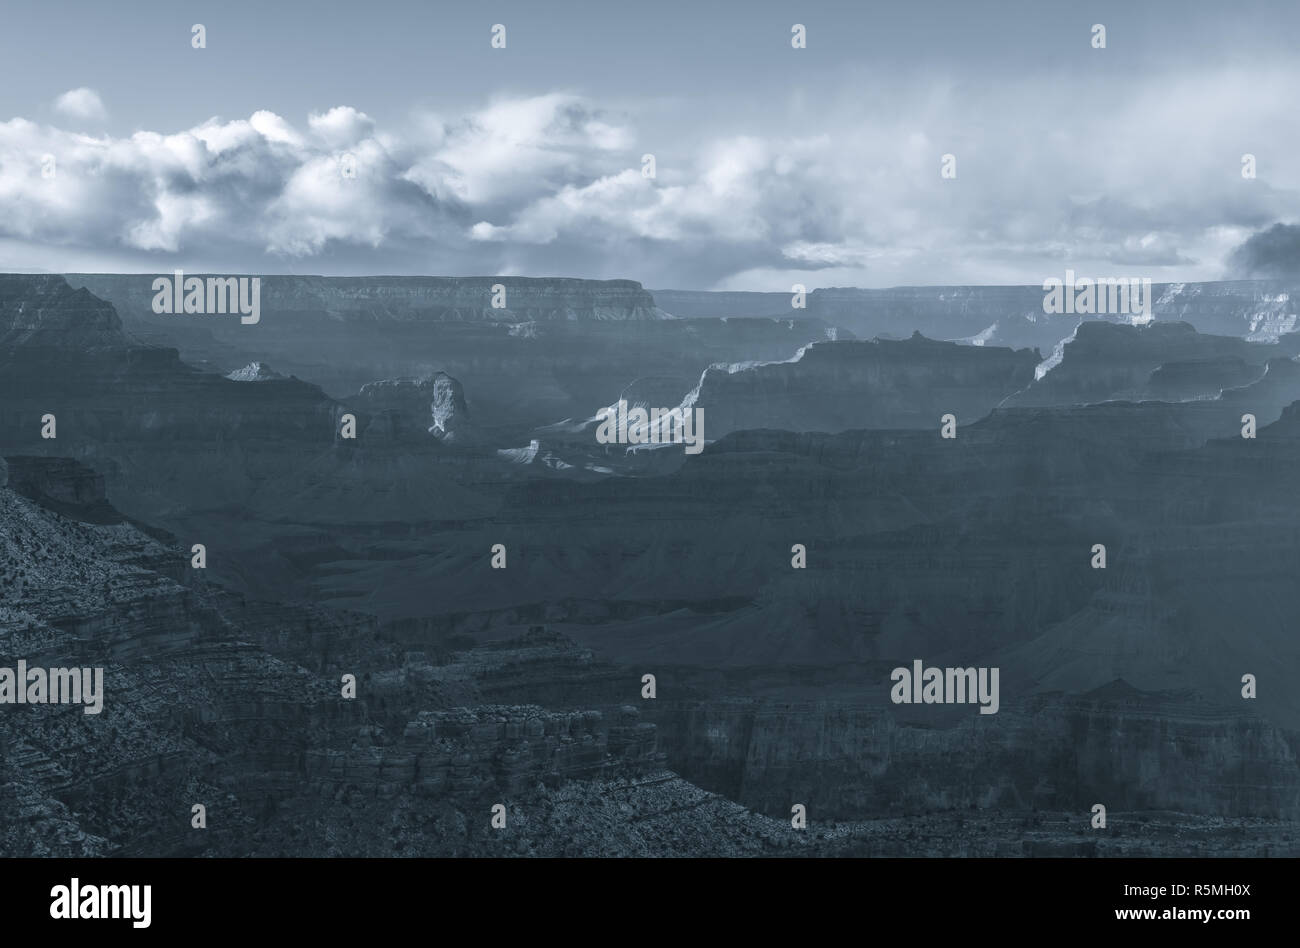 Présentation monochrome du Grand Canyon après une tempête hivernale, Arizona, United States. Banque D'Images